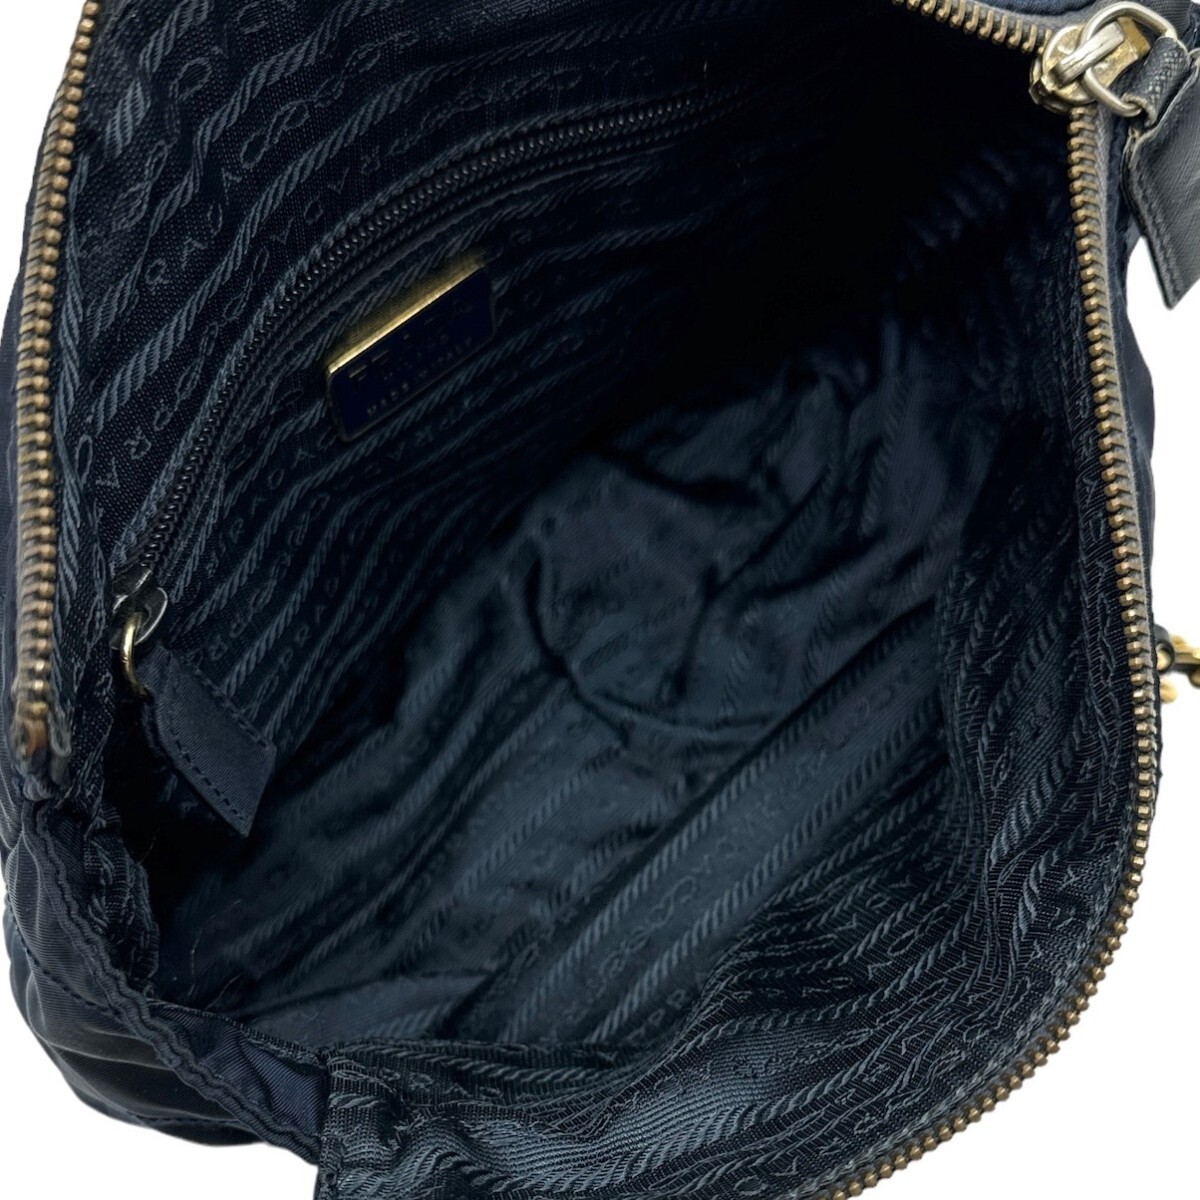  Prada цепь сумка цепь сумка на плечо Италия производства темно-синий 24E04-B1